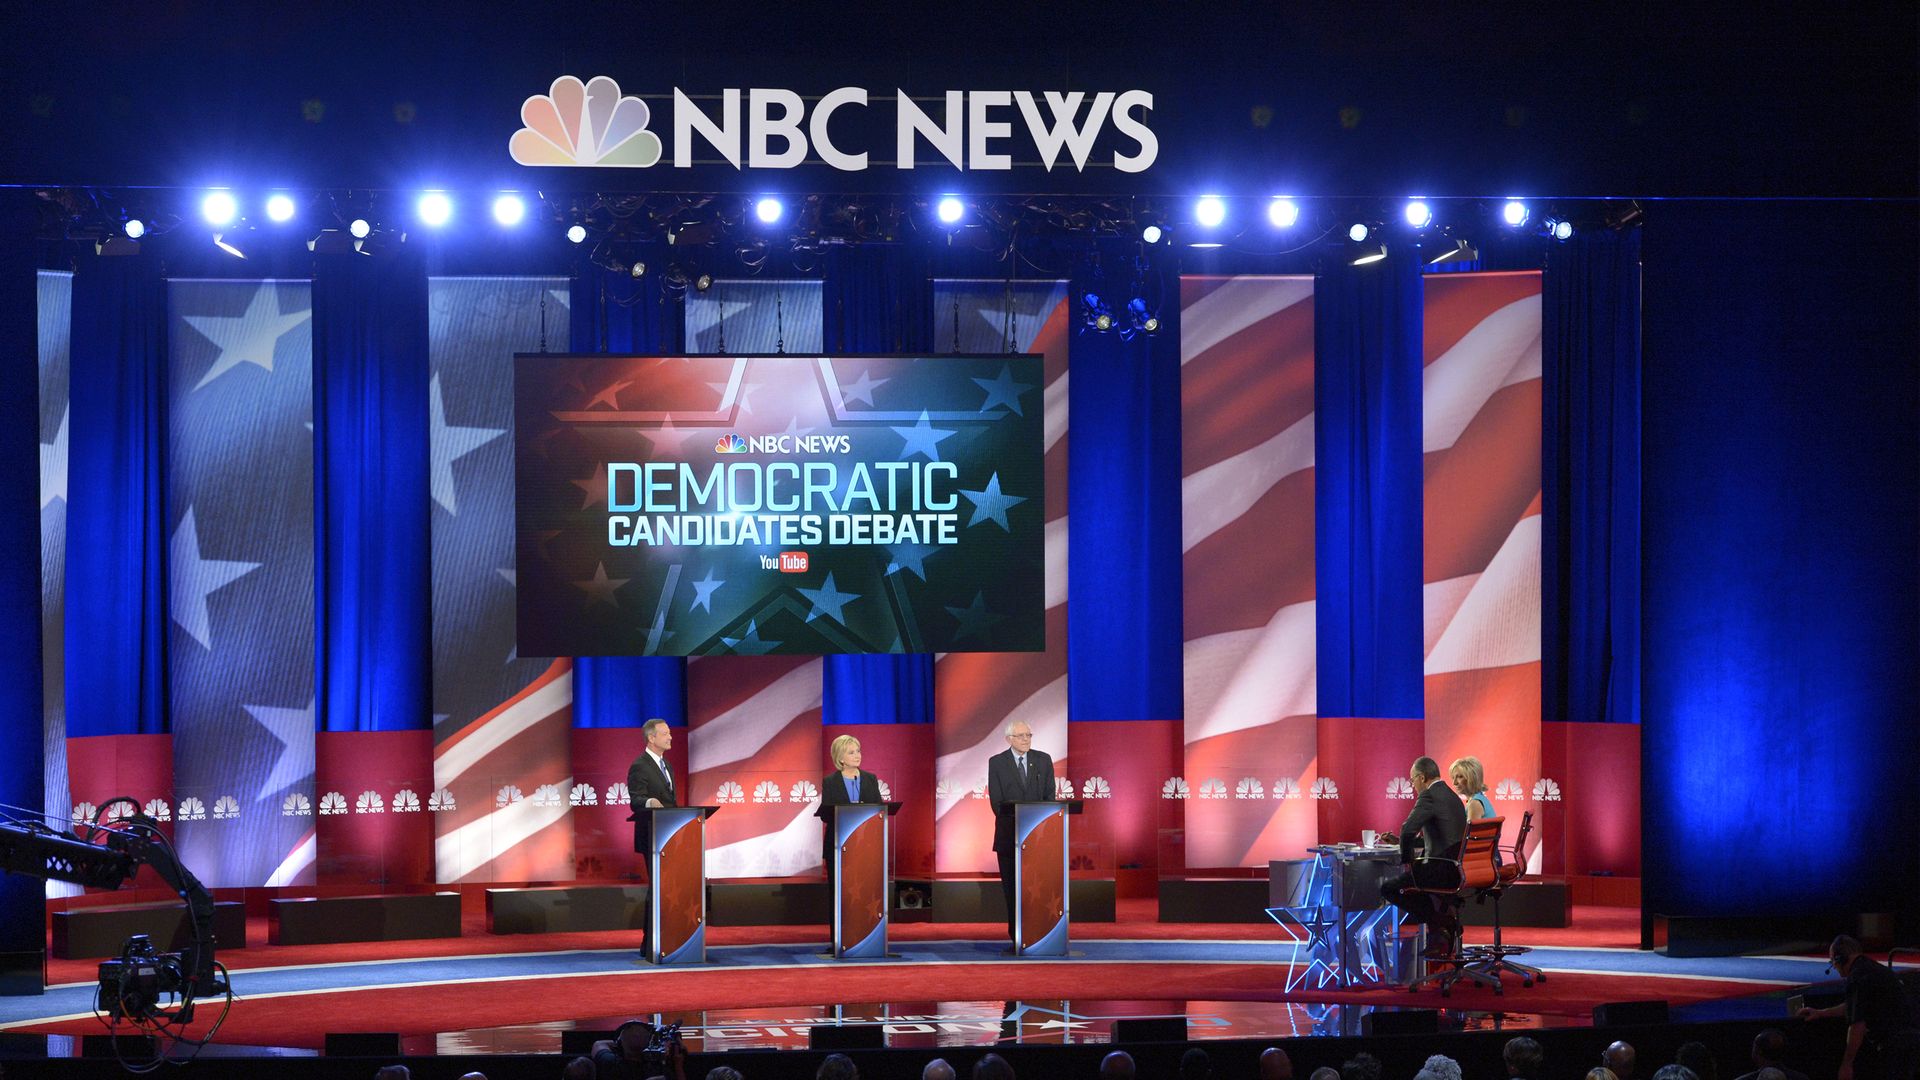 The 2016 Democratic presidential debate